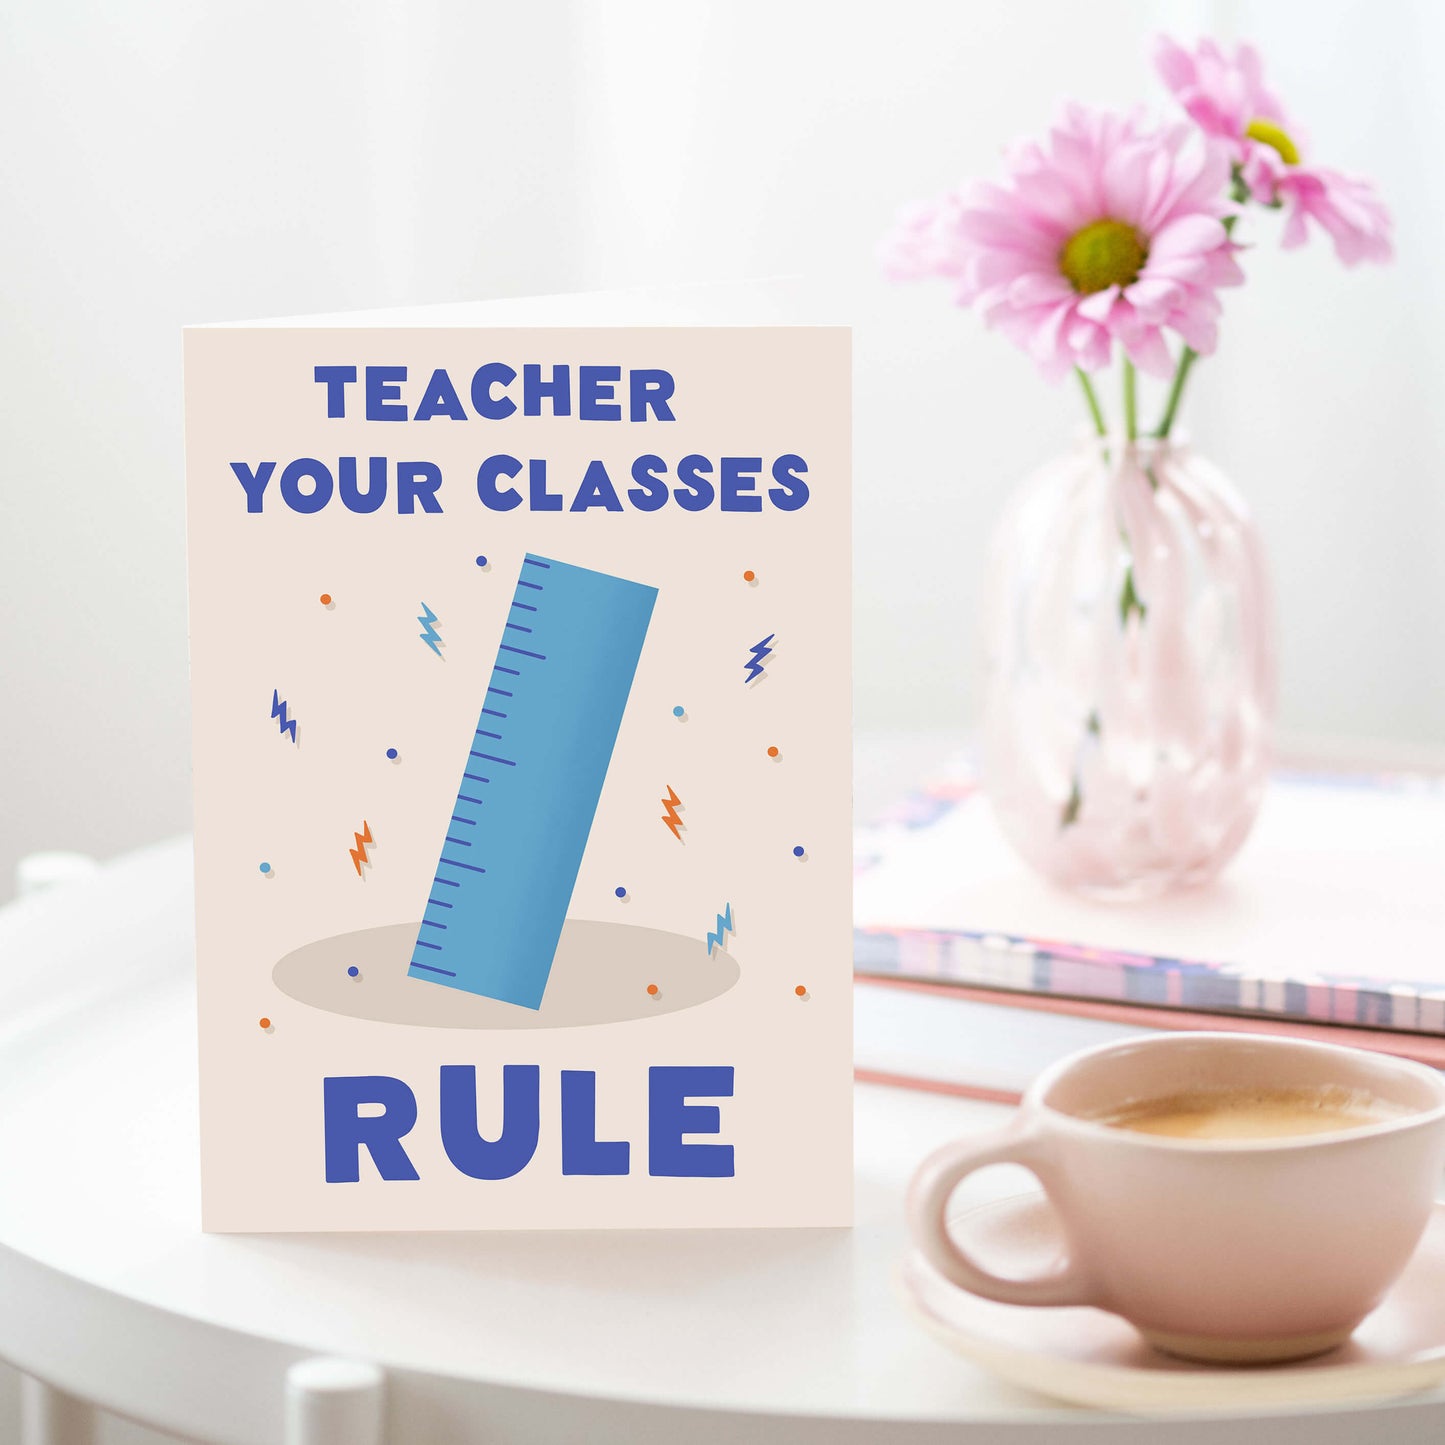 Your Classes Rule Teacher Card | Thank You Teacher Cards